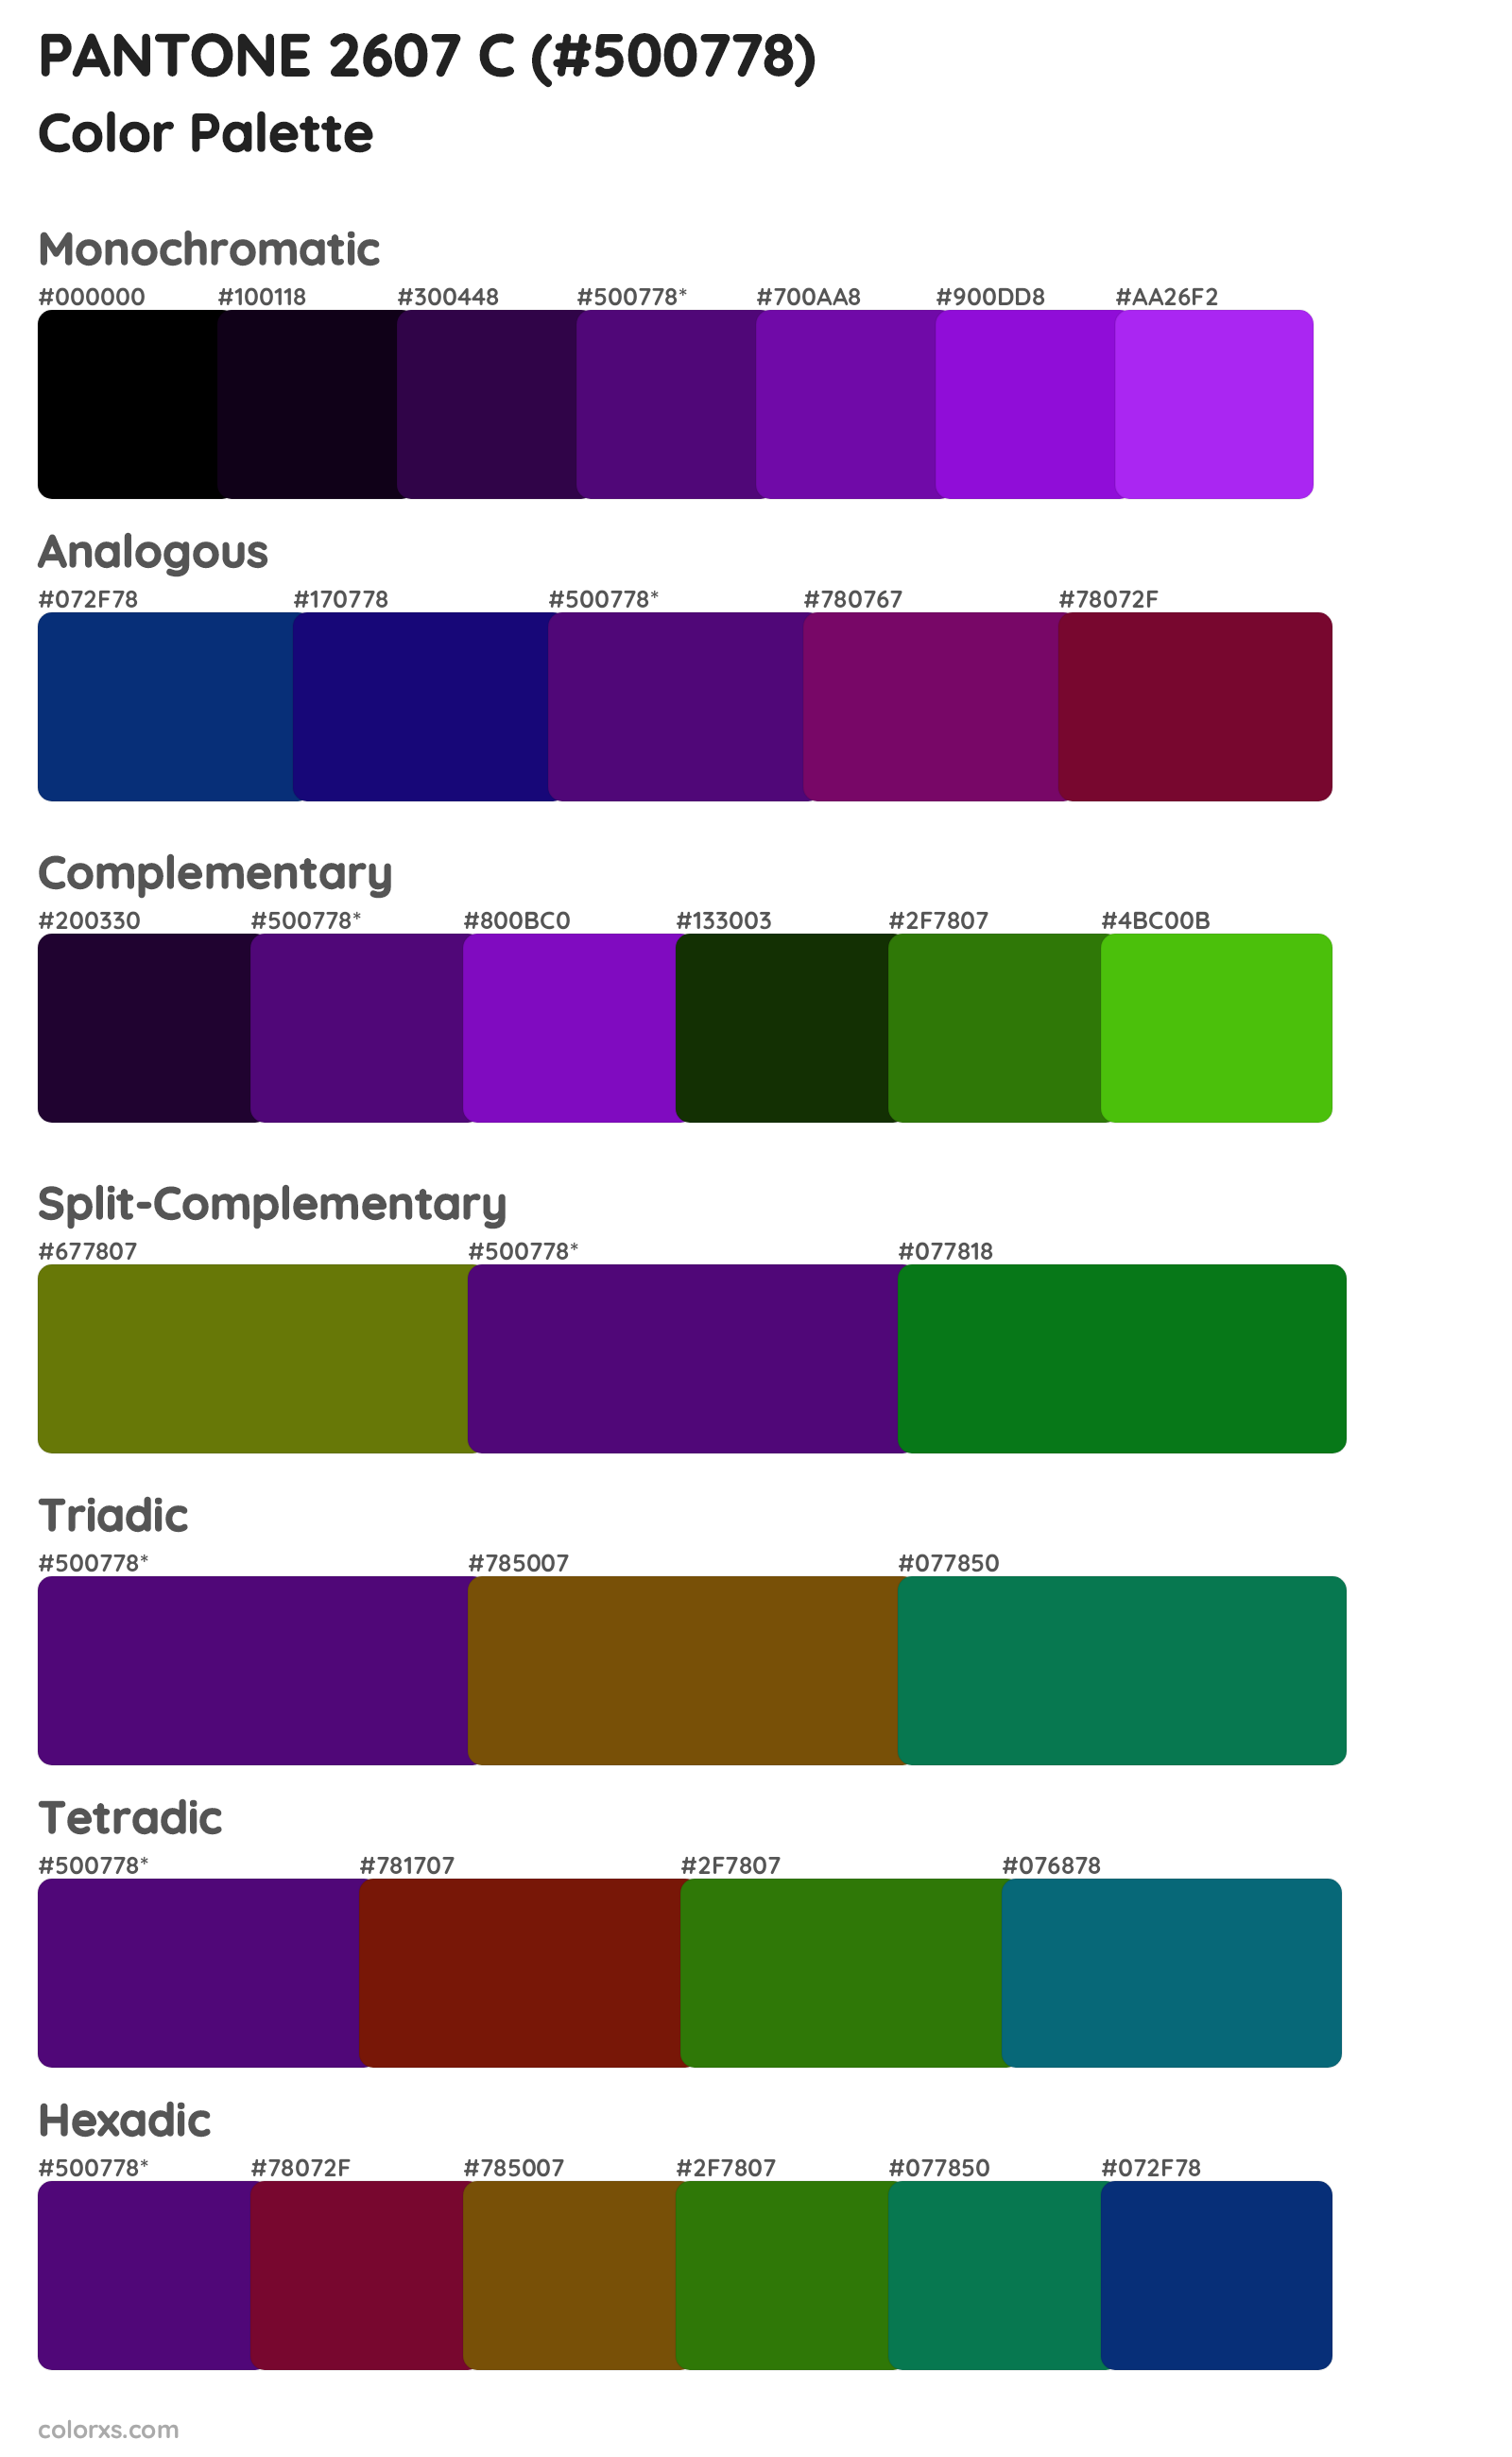 PANTONE 2607 C Color Scheme Palettes